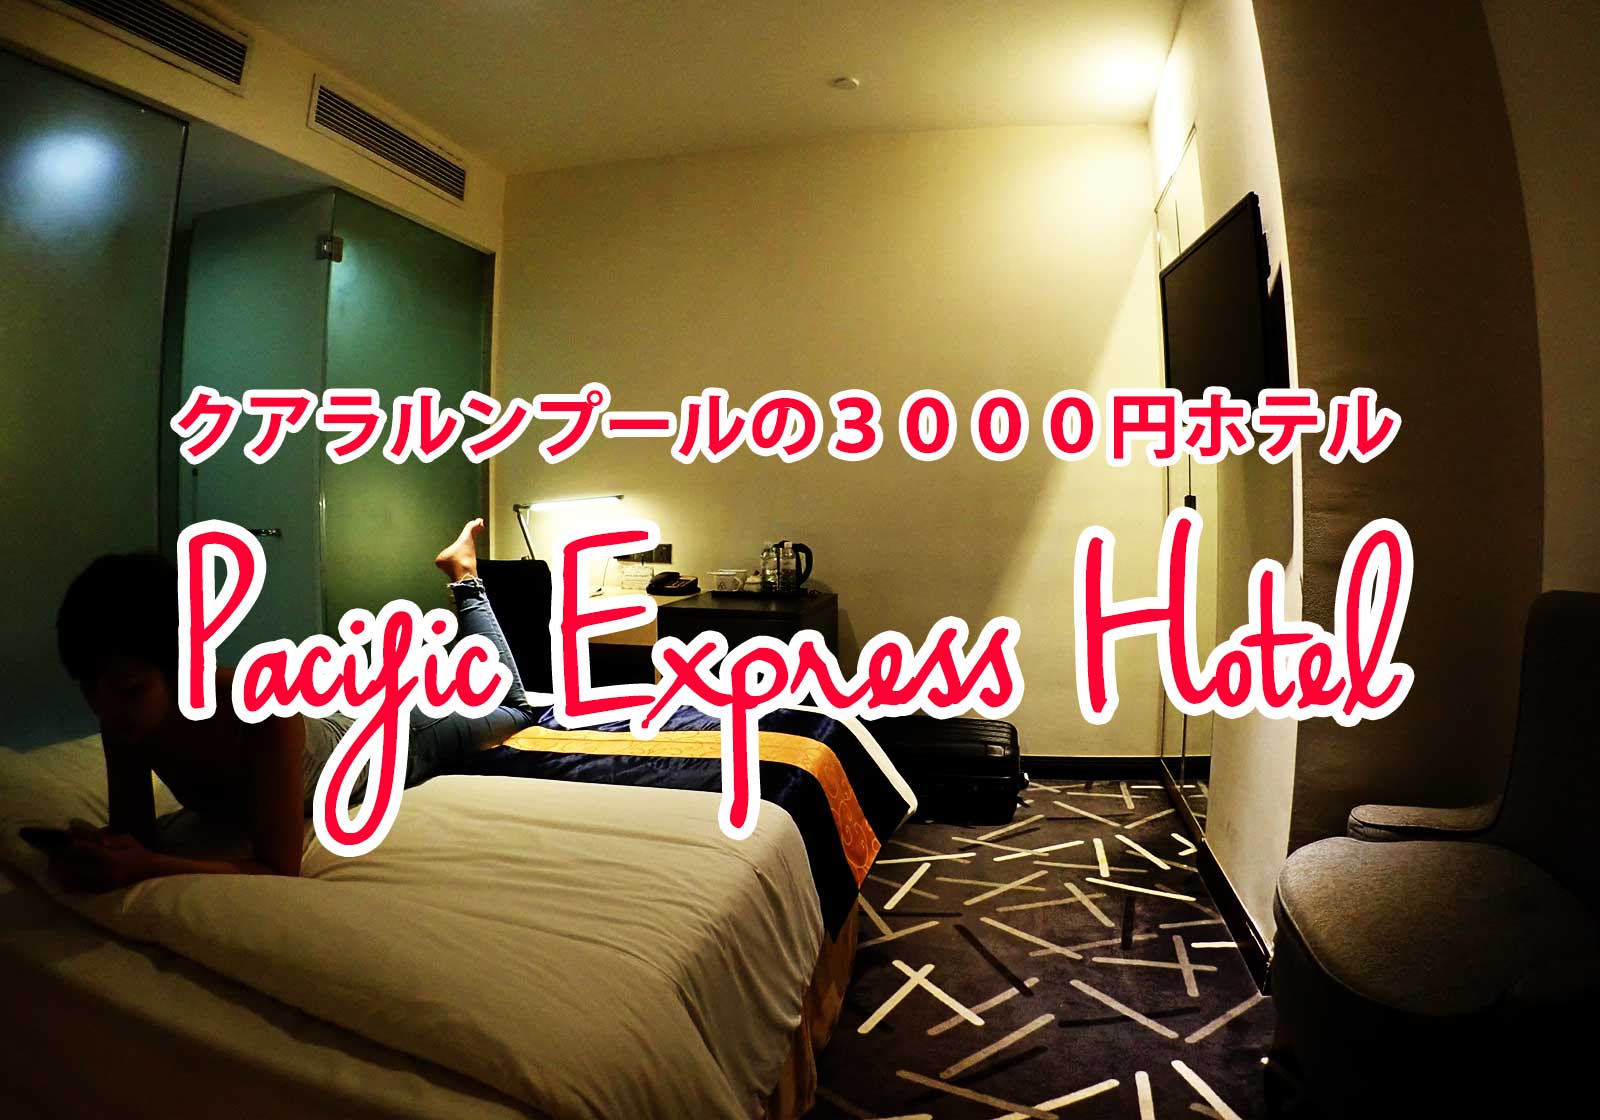 クアラルンプールのおすすめ三千円ホテル